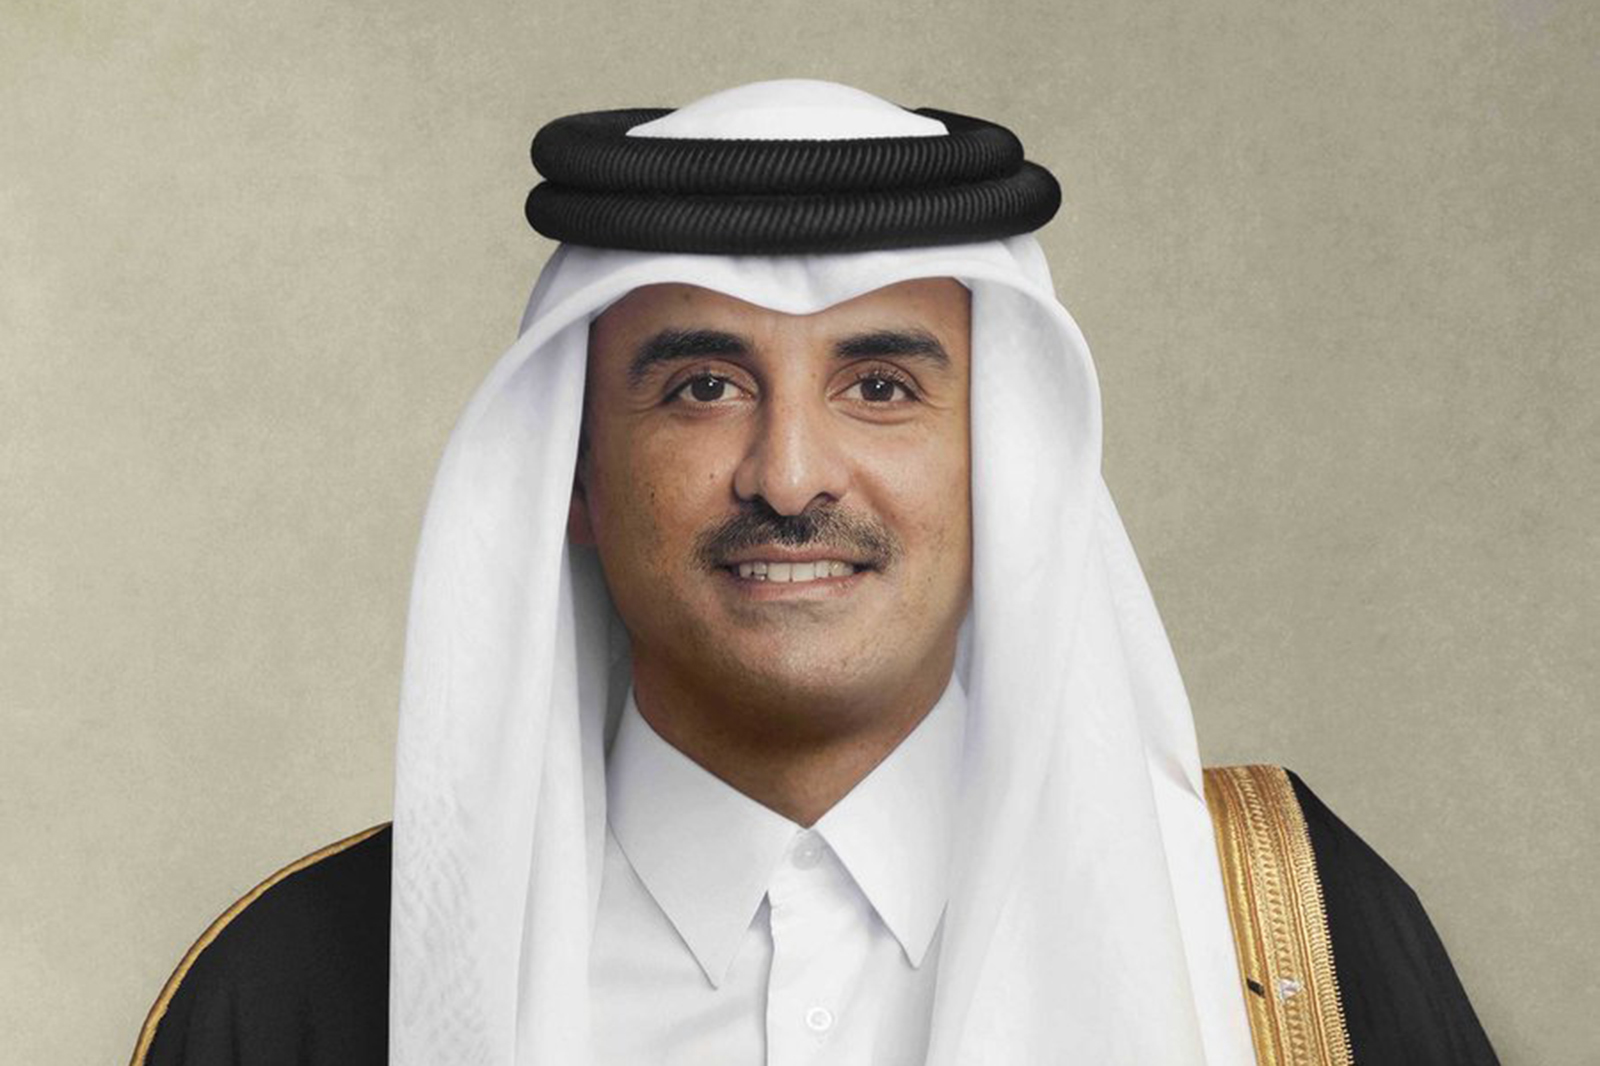  أمير قطر الشيخ تميم بن حمد آل ثاني  (قنا)